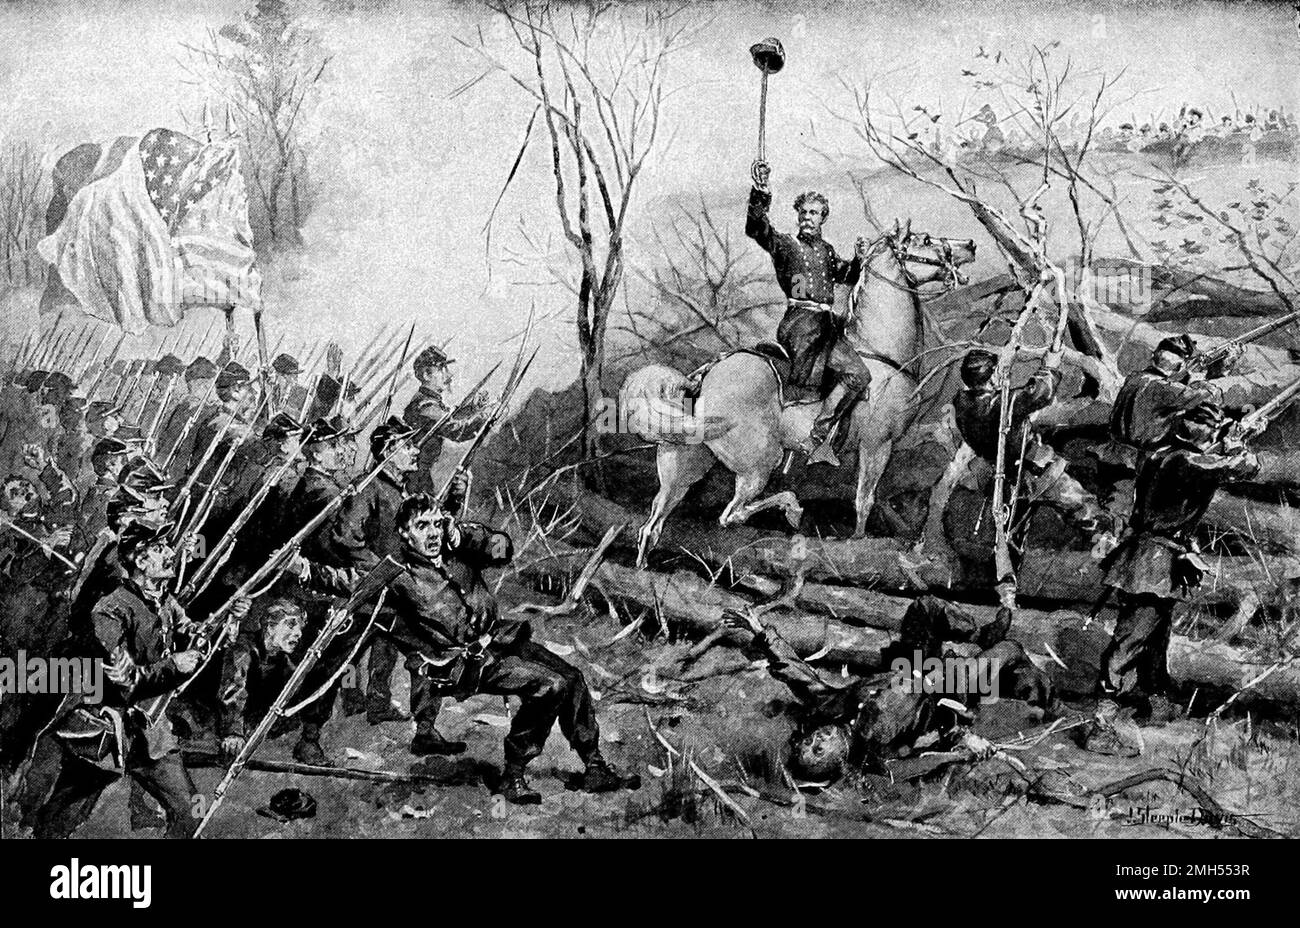 Die Schlacht von Fort Donelson war eine Schlacht im Amerikanischen Bürgerkrieg vom 11. Bis 12. Februar 1862 in Kentucky. Es war ein amphibischer Angriff der Unionisten auf Fort Donelson unter dem Kommando von Odysseus Grant, und es war ein unionistischer Sieg, als das Fort eingenommen wurde. Das Bild zeigt General Charles Smith auf einem Pferd als Anführer seiner Truppen. Stockfoto